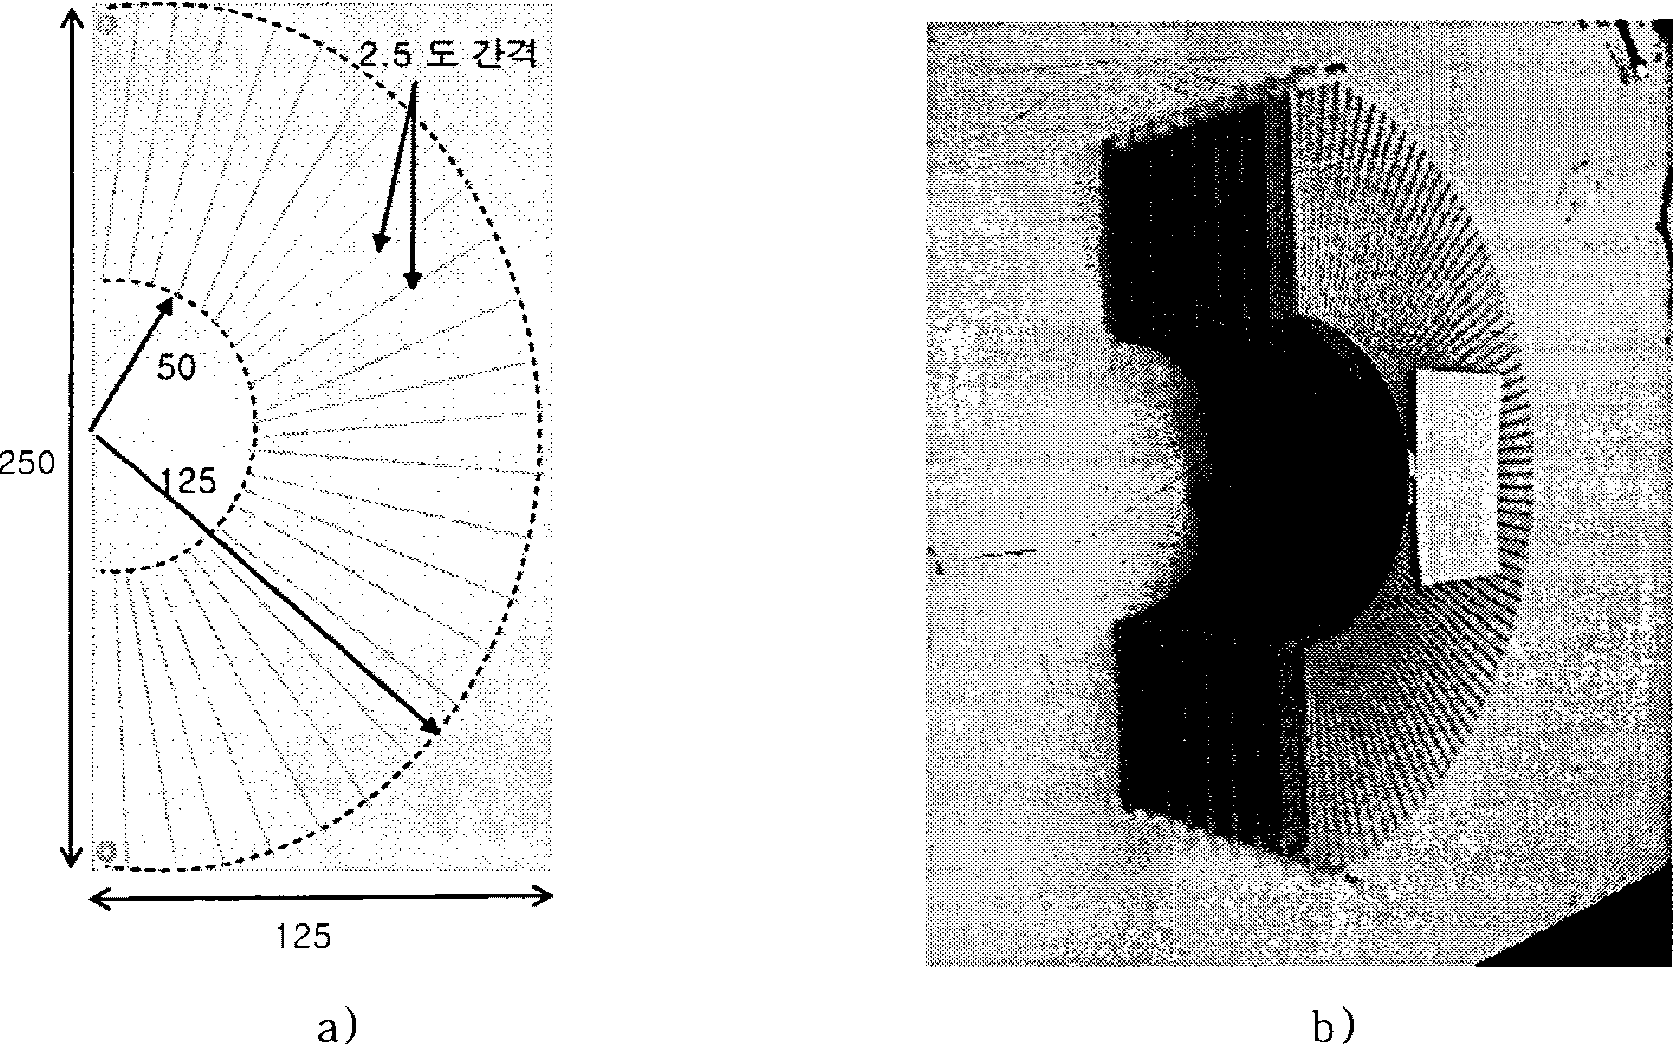 방사형 전파 렌즈 2 차 시제품 도면(a)과 실물 사진(b)